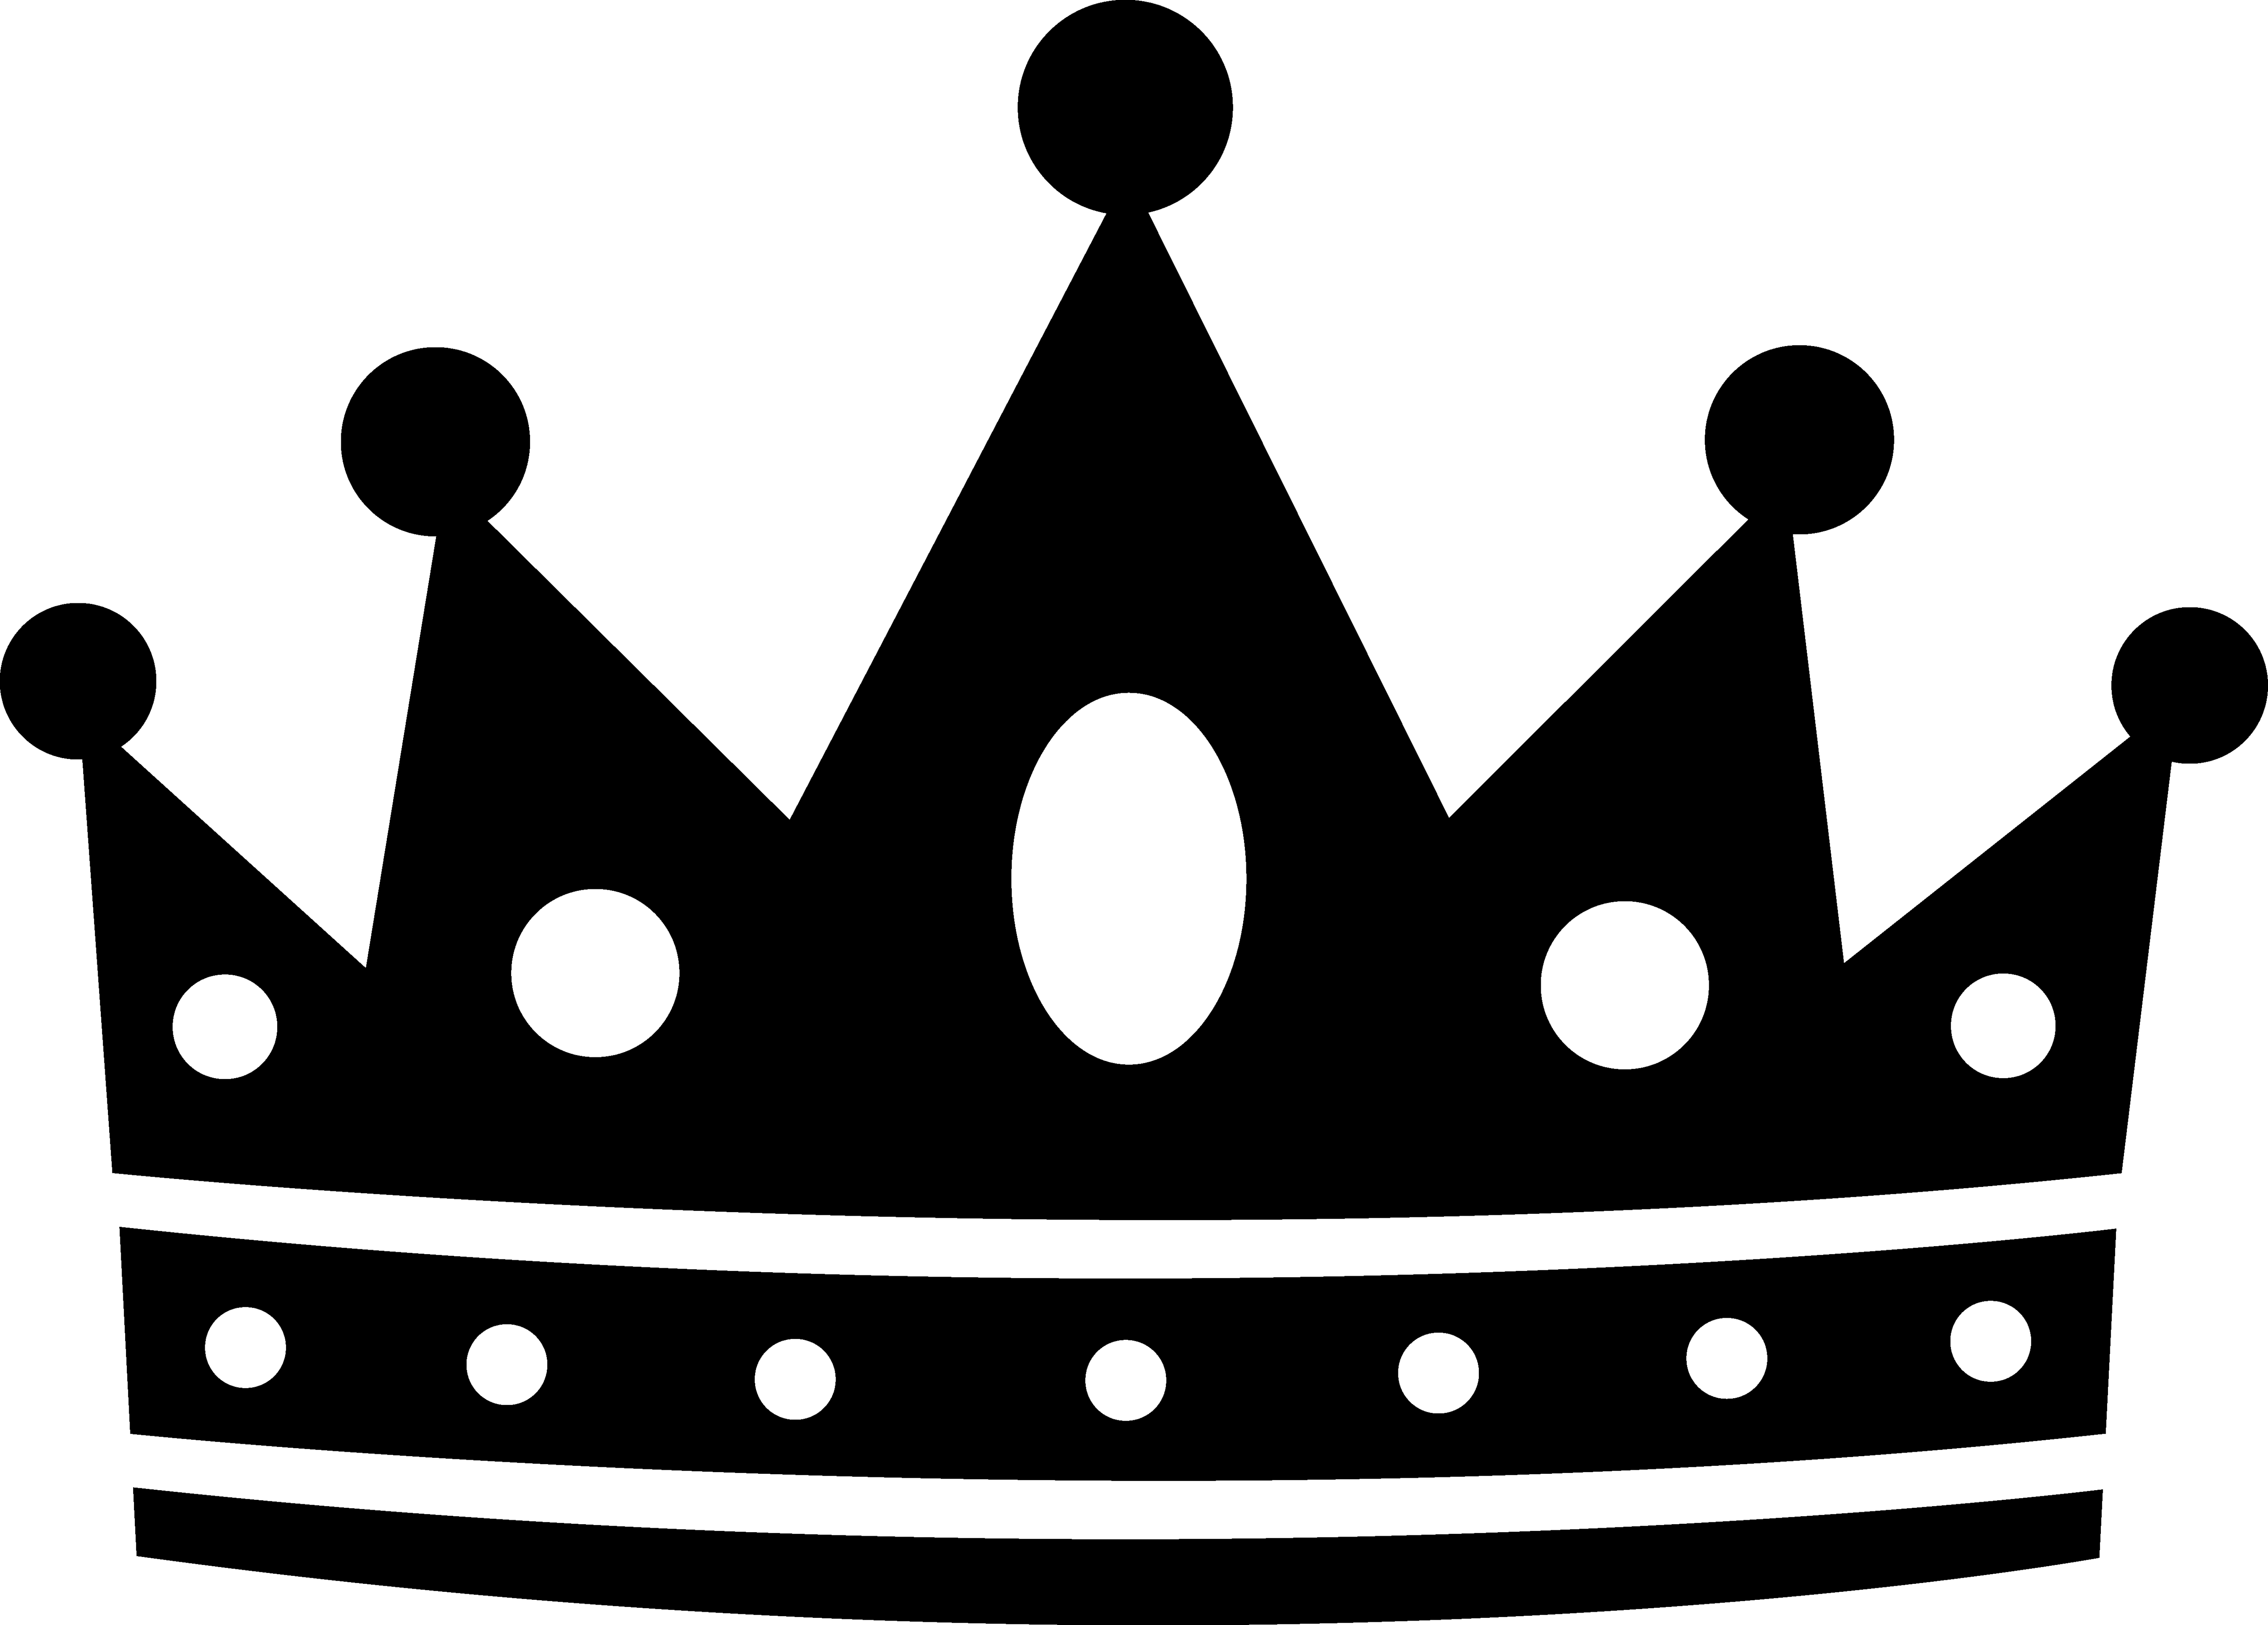 Logo Brand King Font, king, king, text, logo png | PNGWing